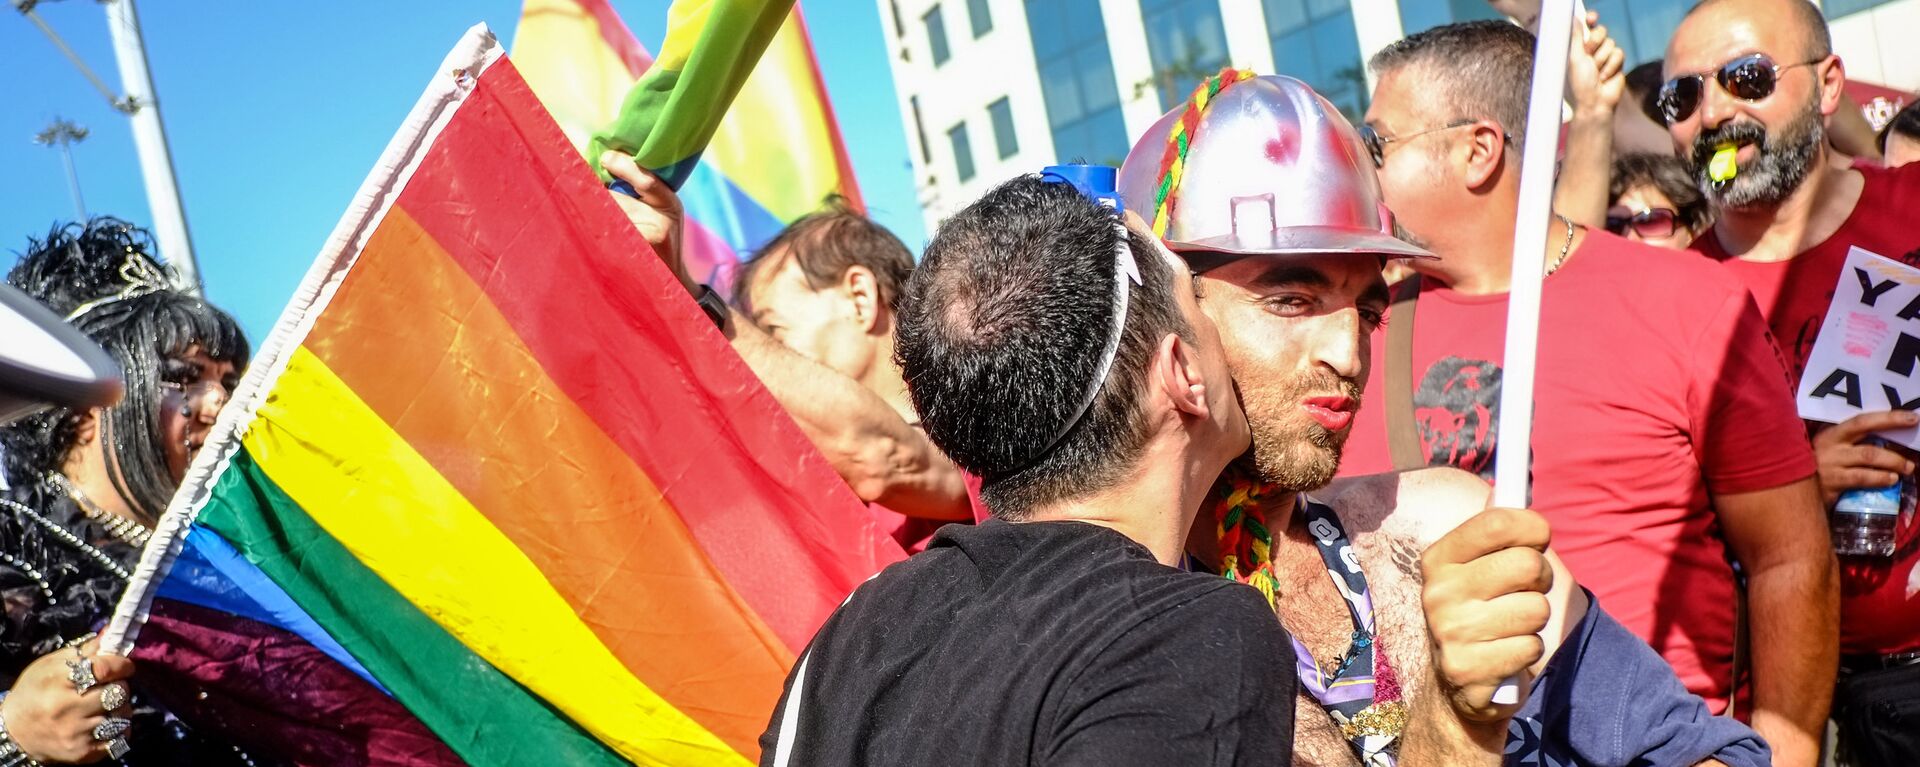 Гей-парад в Стамбуле - Sputnik Латвия, 1920, 29.09.2018